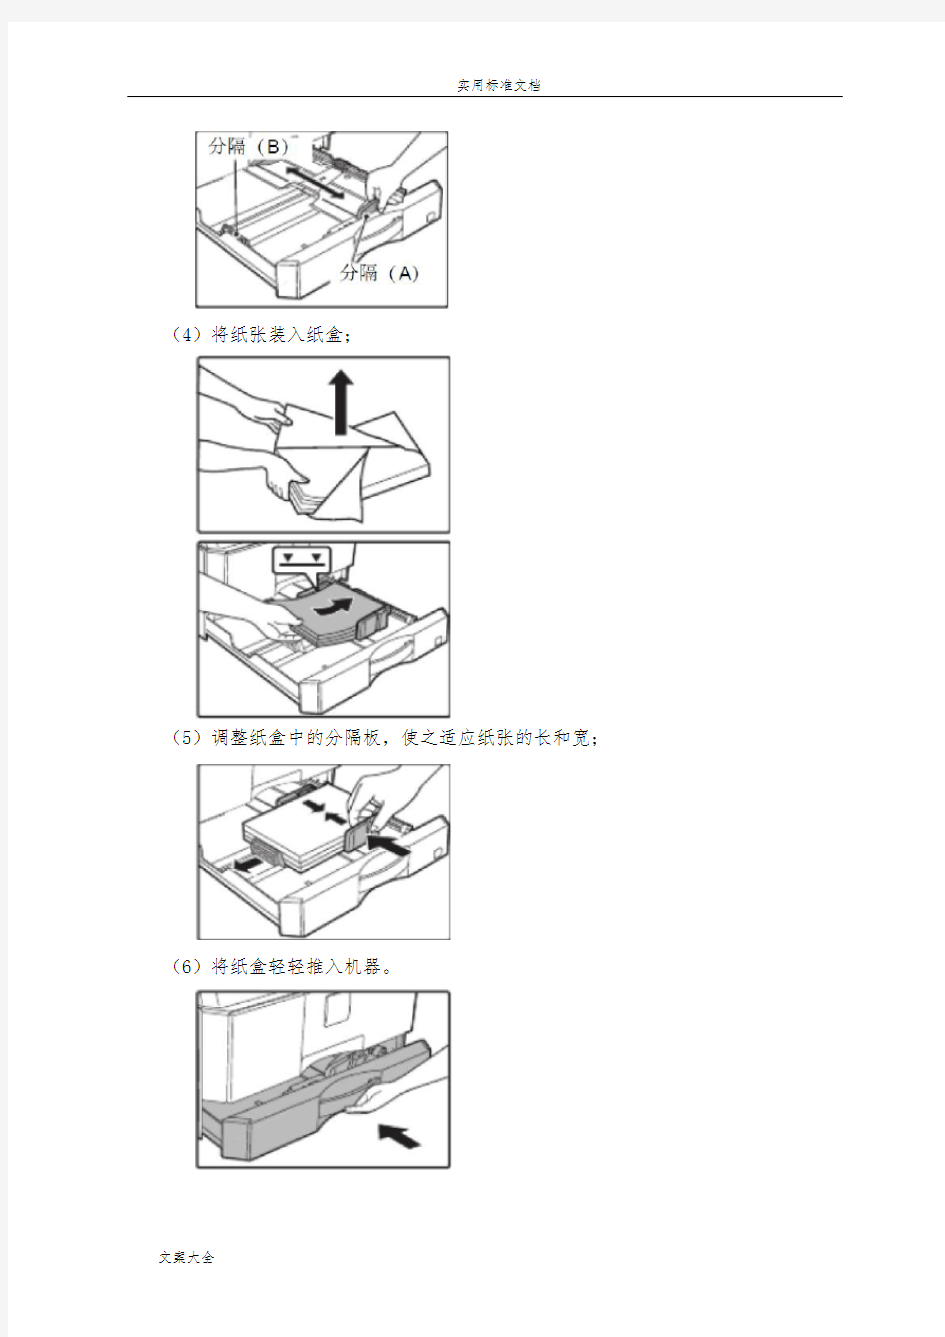 AR-2048N夏普复印机基础操作手册簿